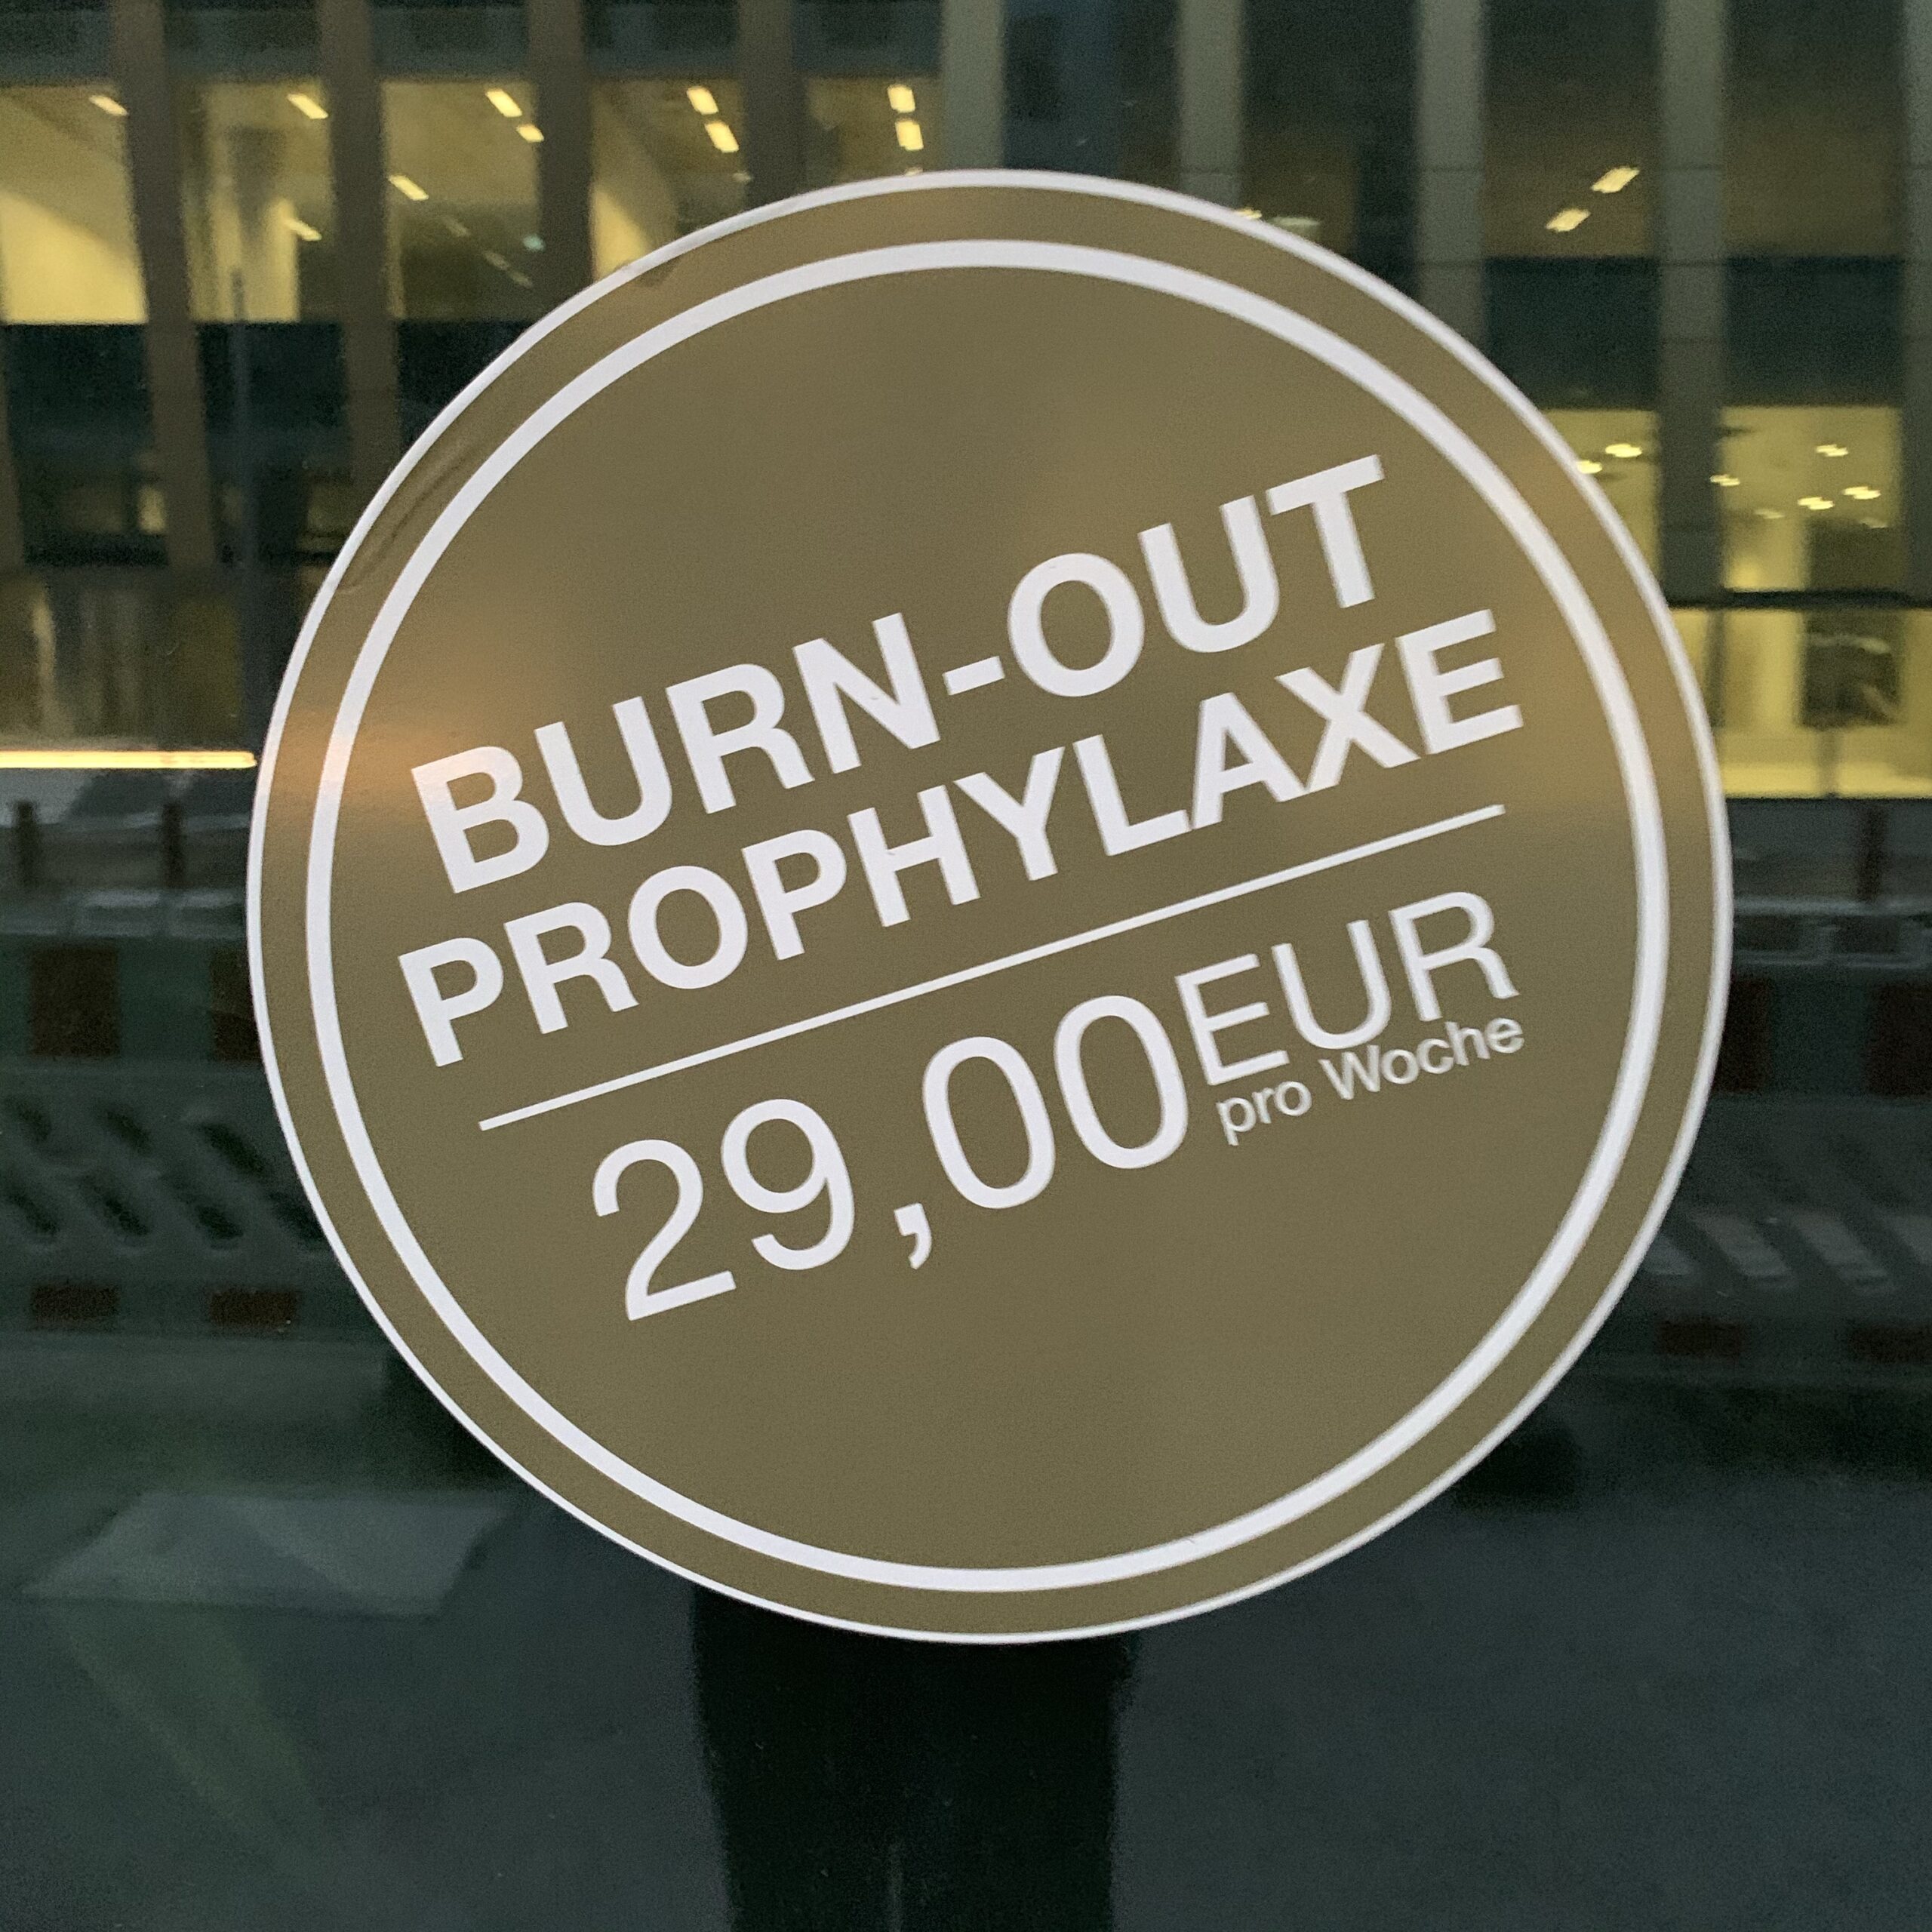 Burnout Prophylaxe